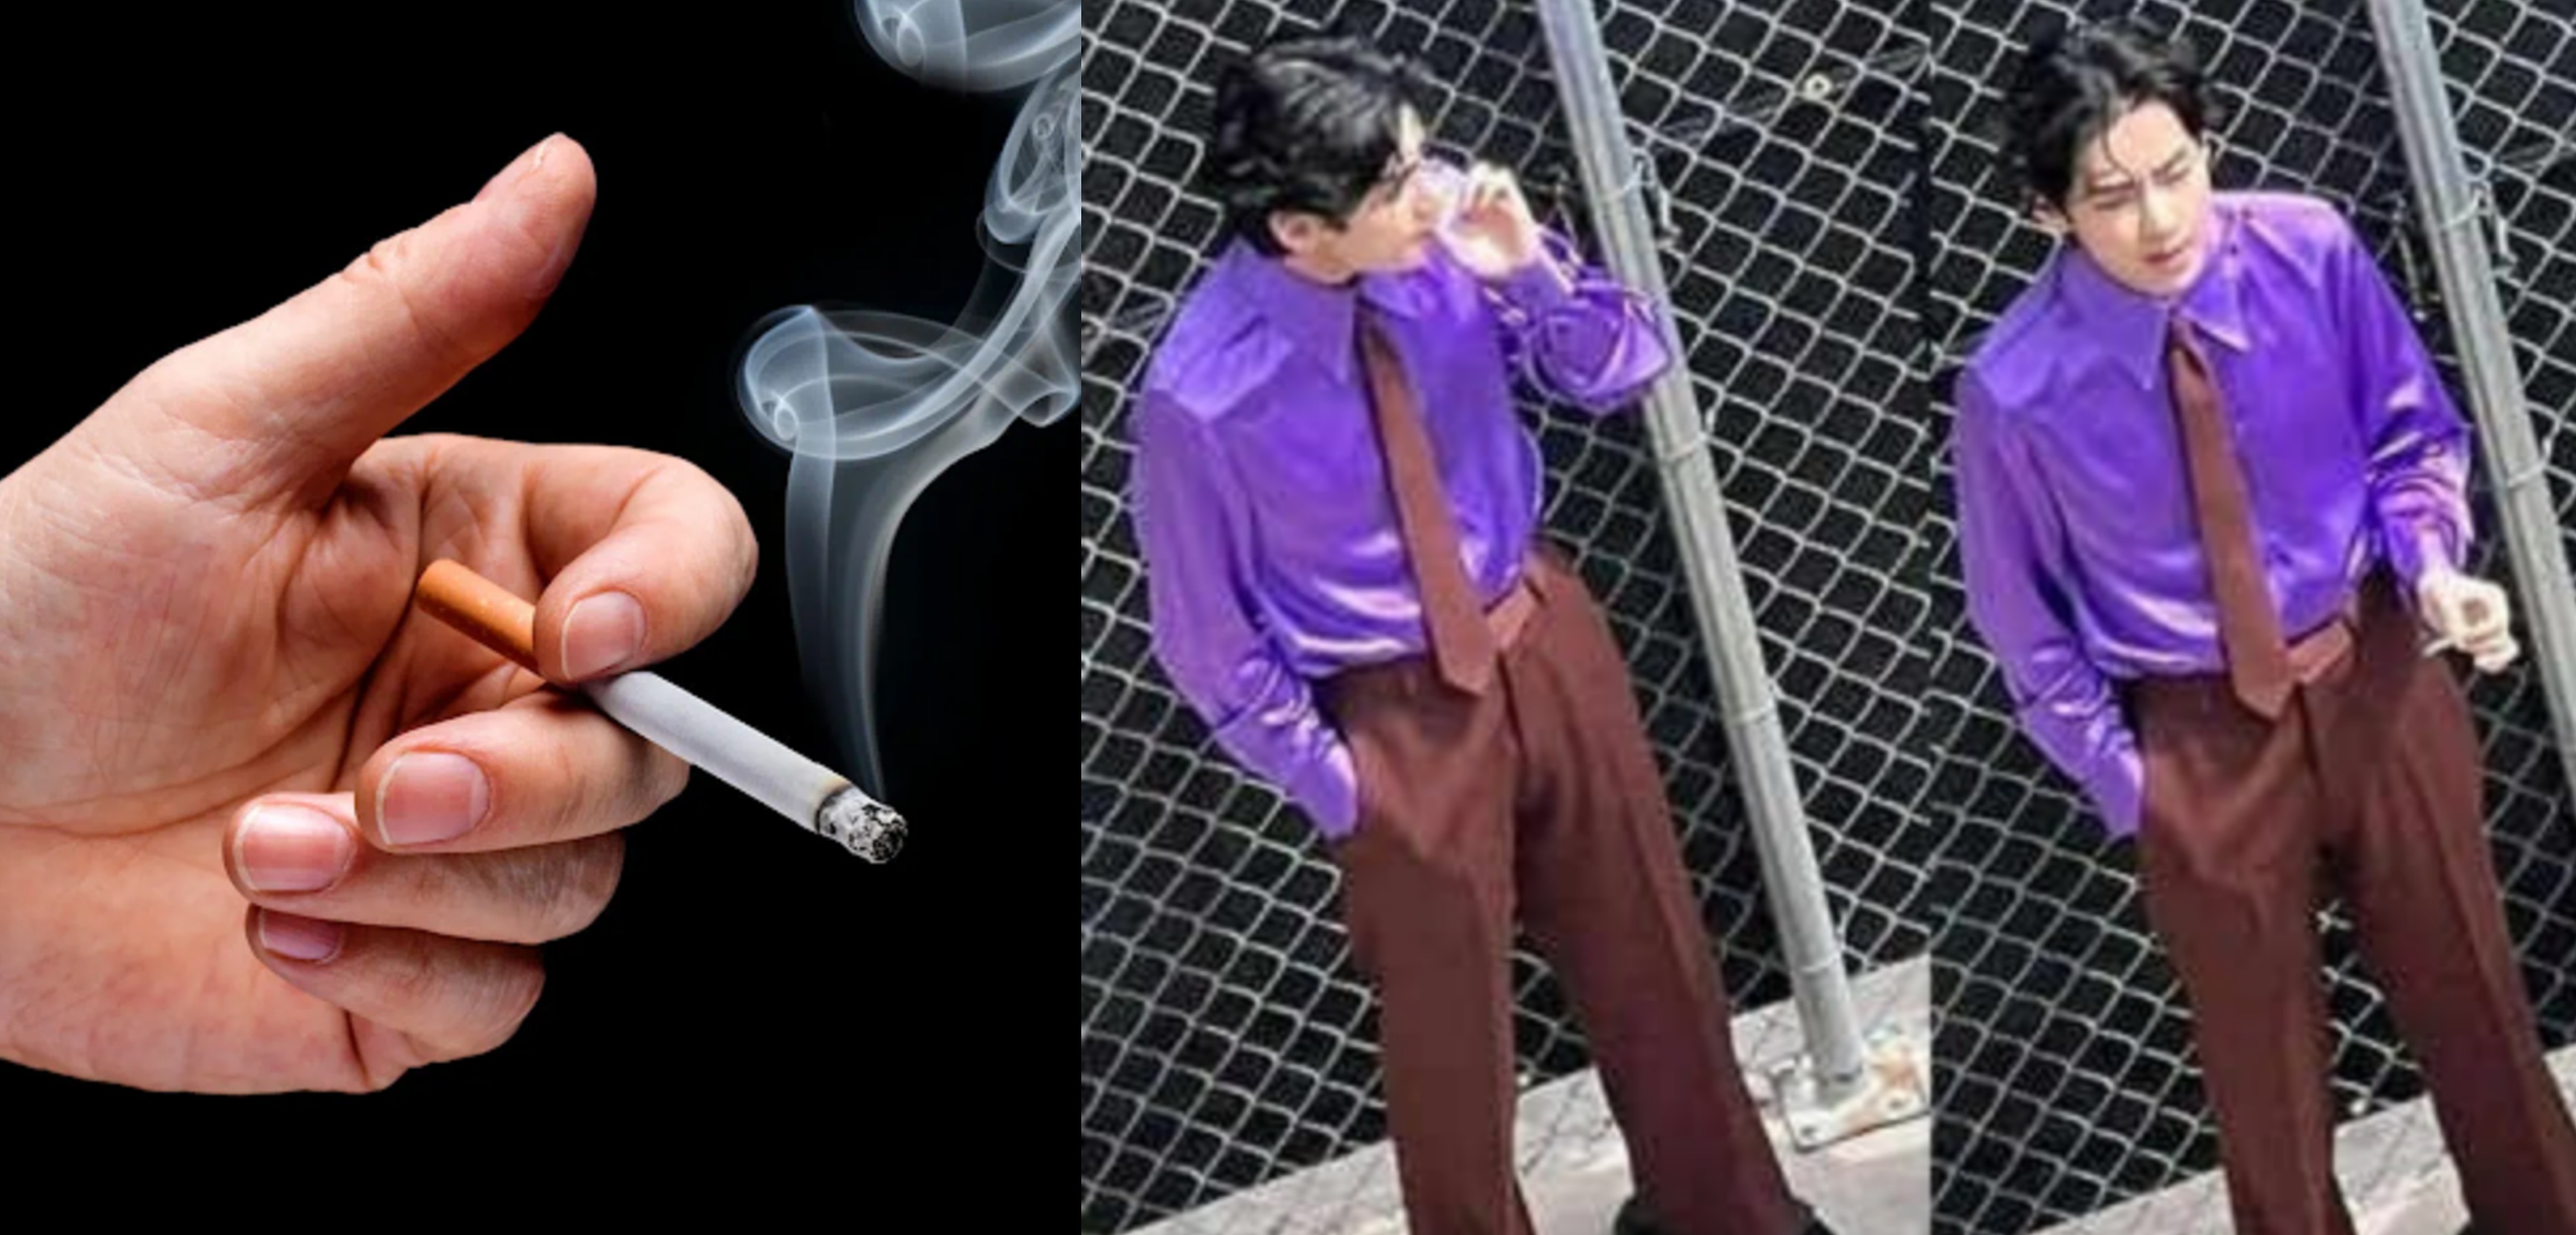 Пост нетизена под названием "В индустрии очень много айдолов-курильщиков" привлек внимание в сети